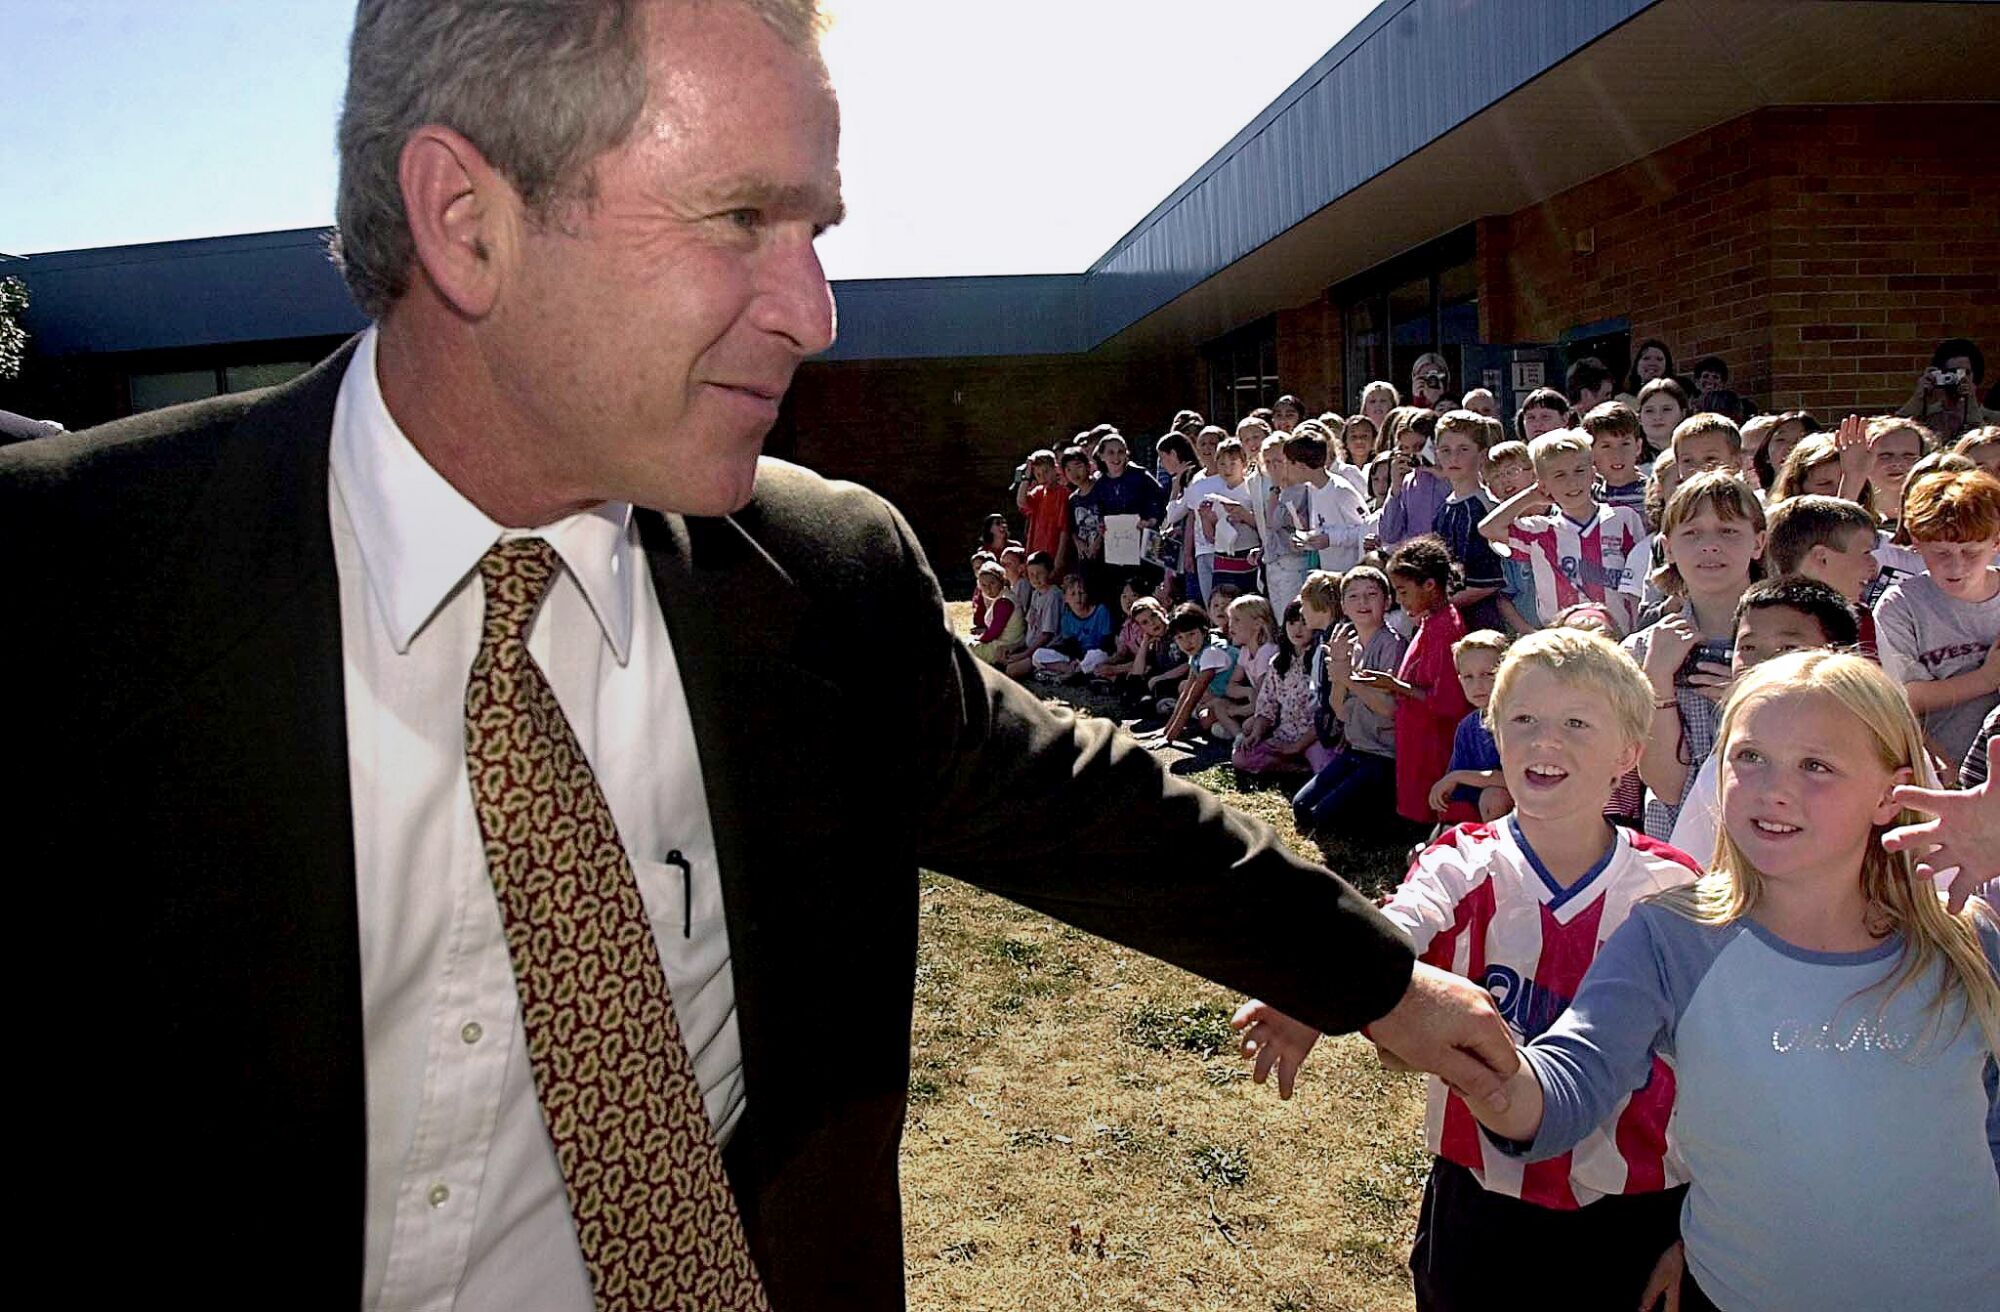 Bazıları eline dokunmak için uzanırken George W. Bush açık havada bir grup çocuktan uzaklaşıyor.